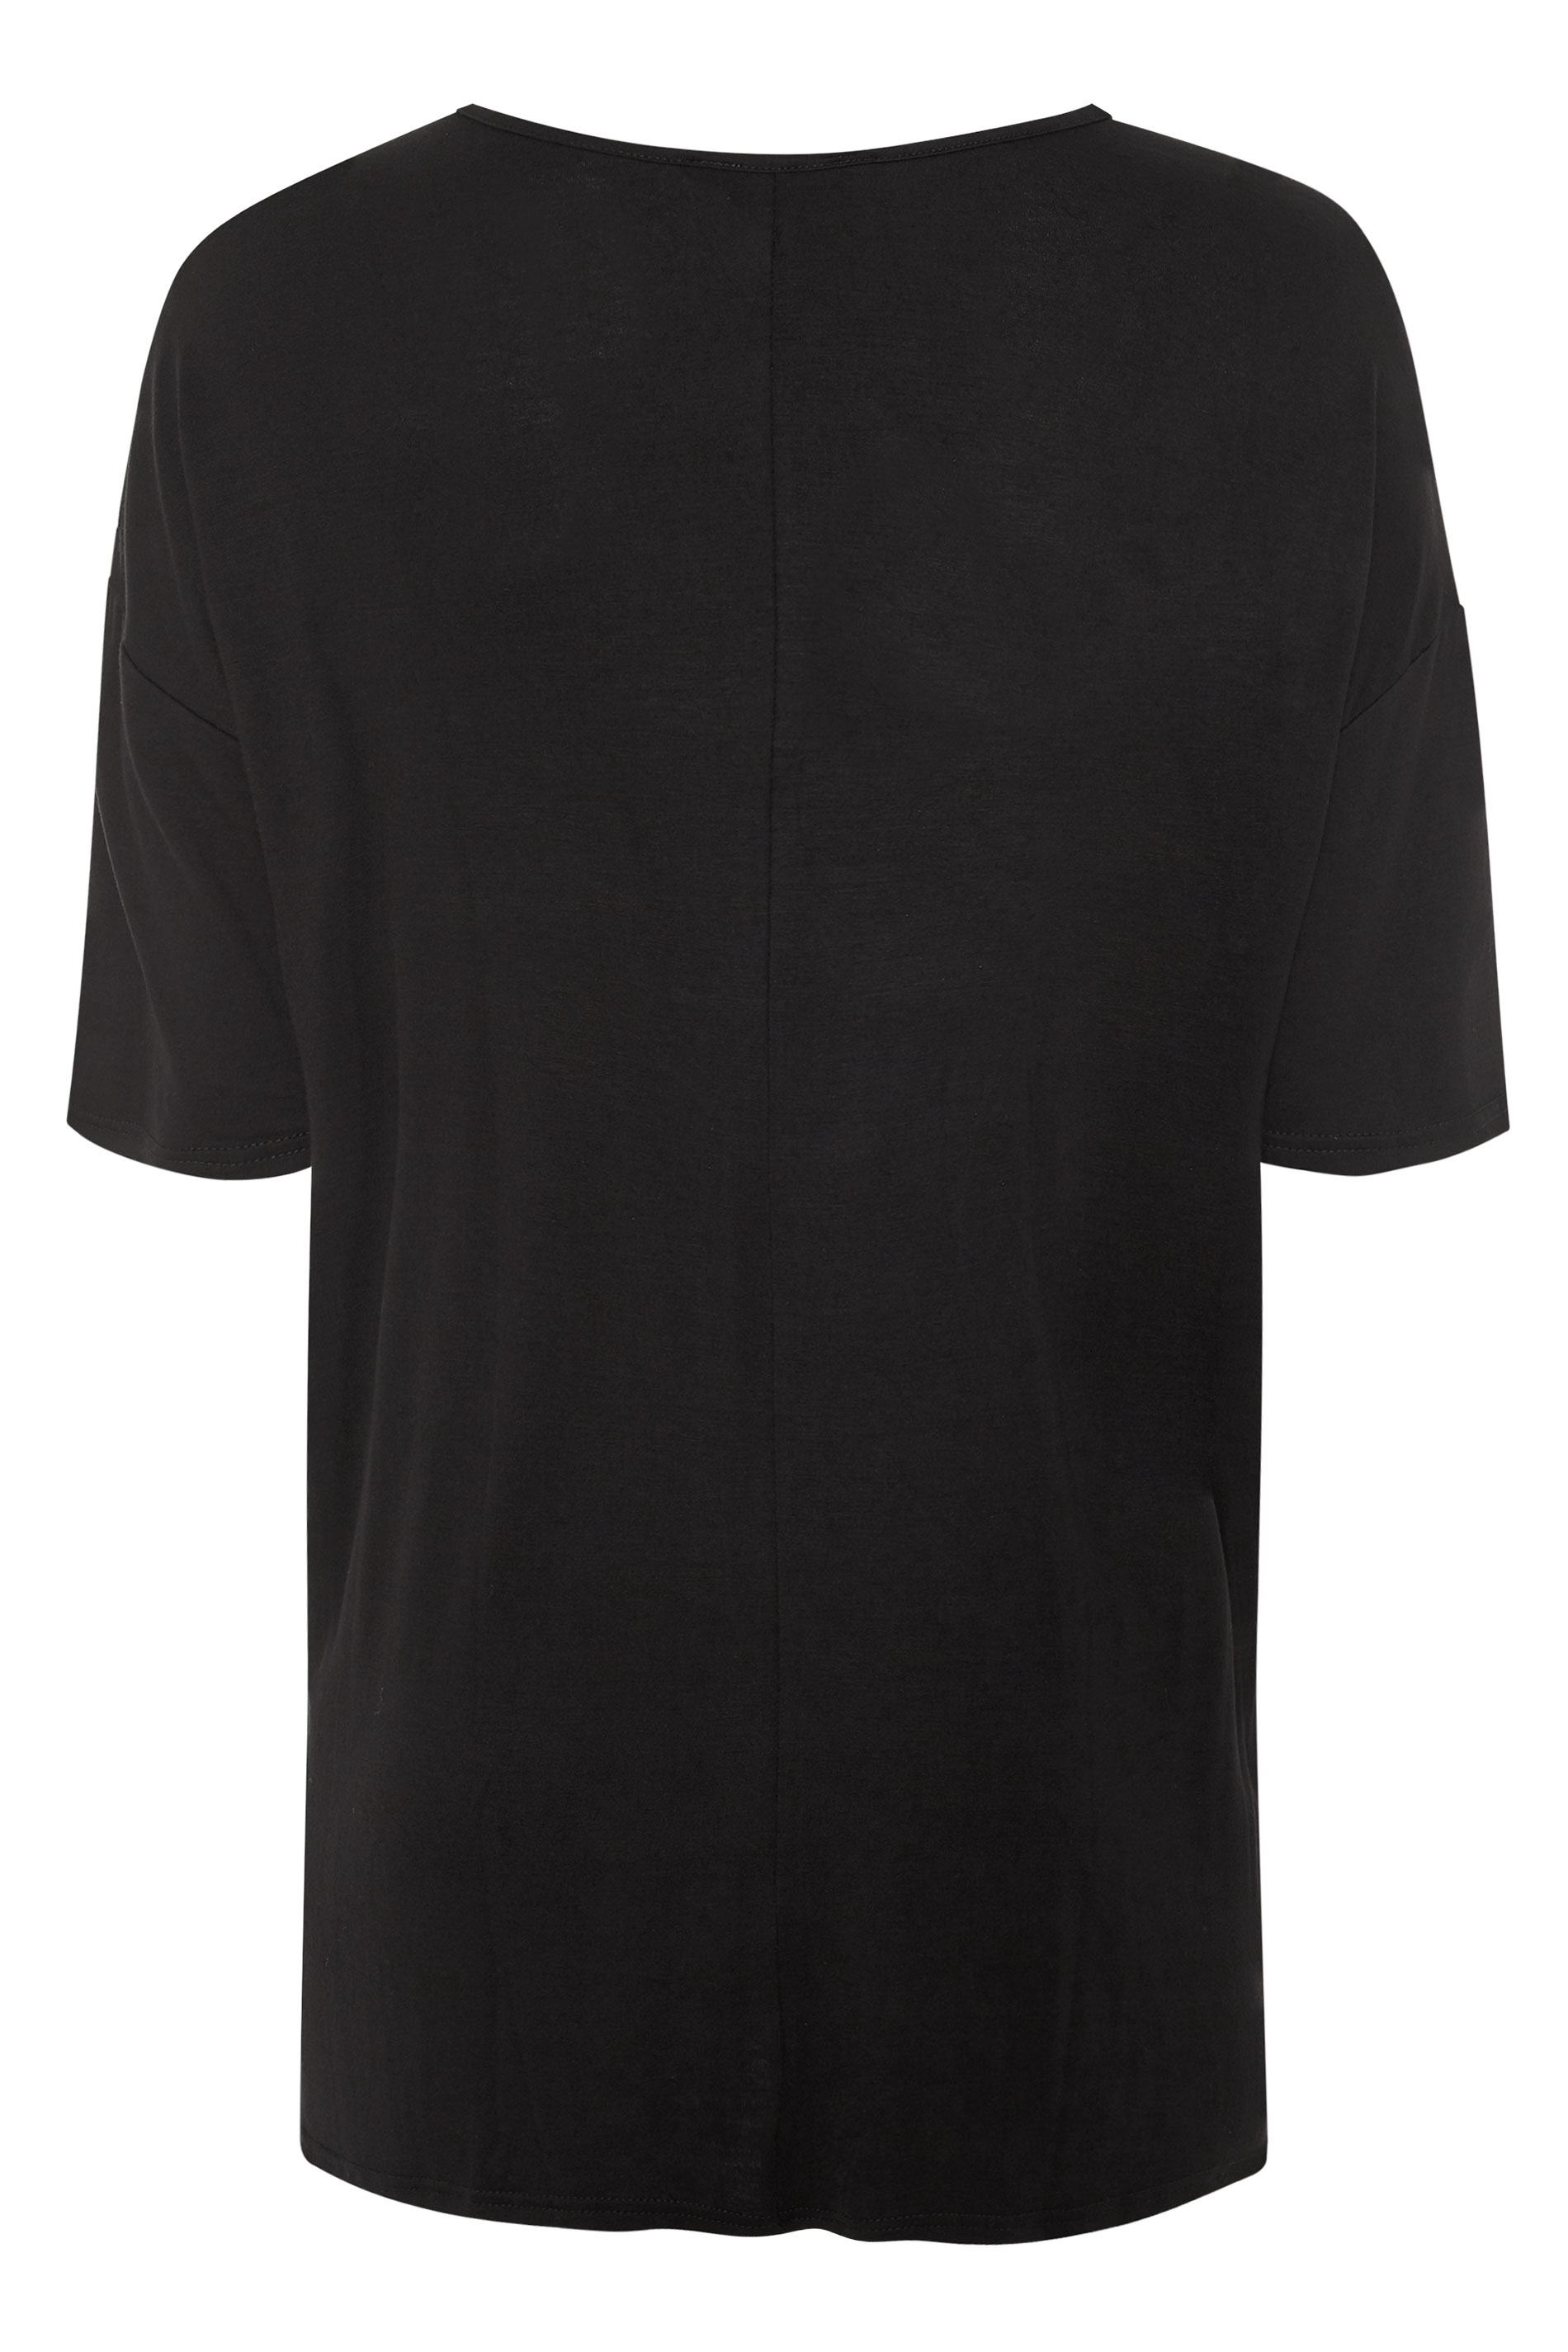 Plus Size Black Oversized T-Shirt | Yours Clothing 2